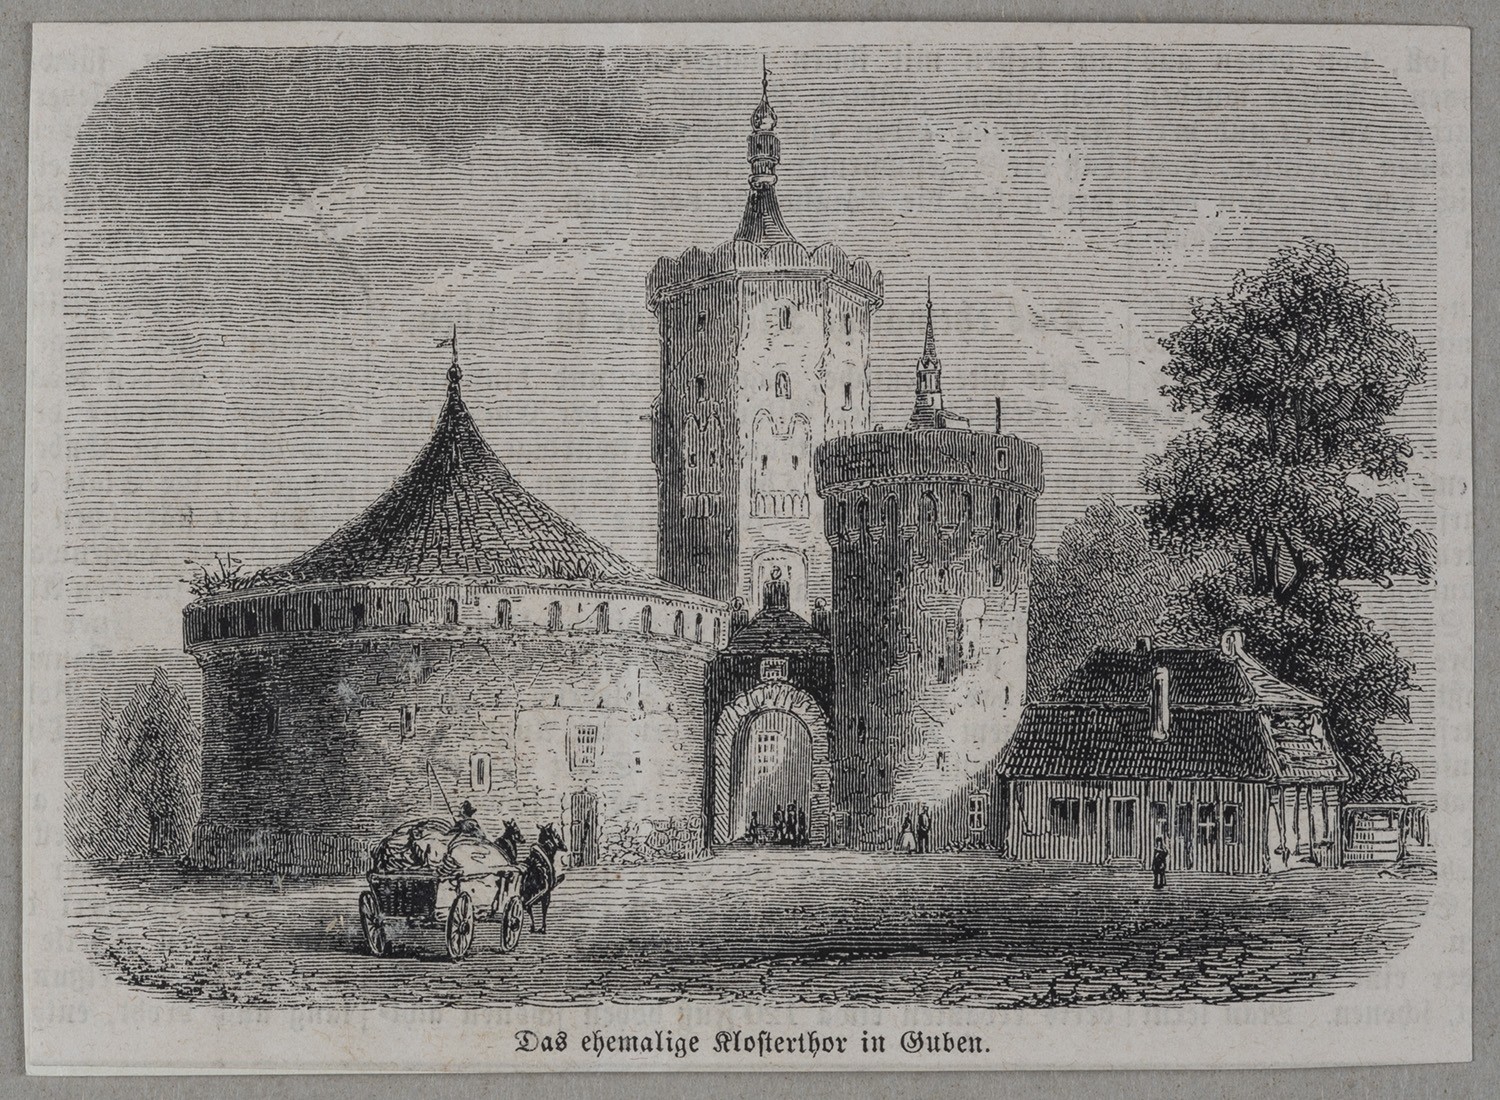 Guben: Klostertor von Westen (Landesgeschichtliche Vereinigung für die Mark Brandenburg e.V., Archiv CC BY)